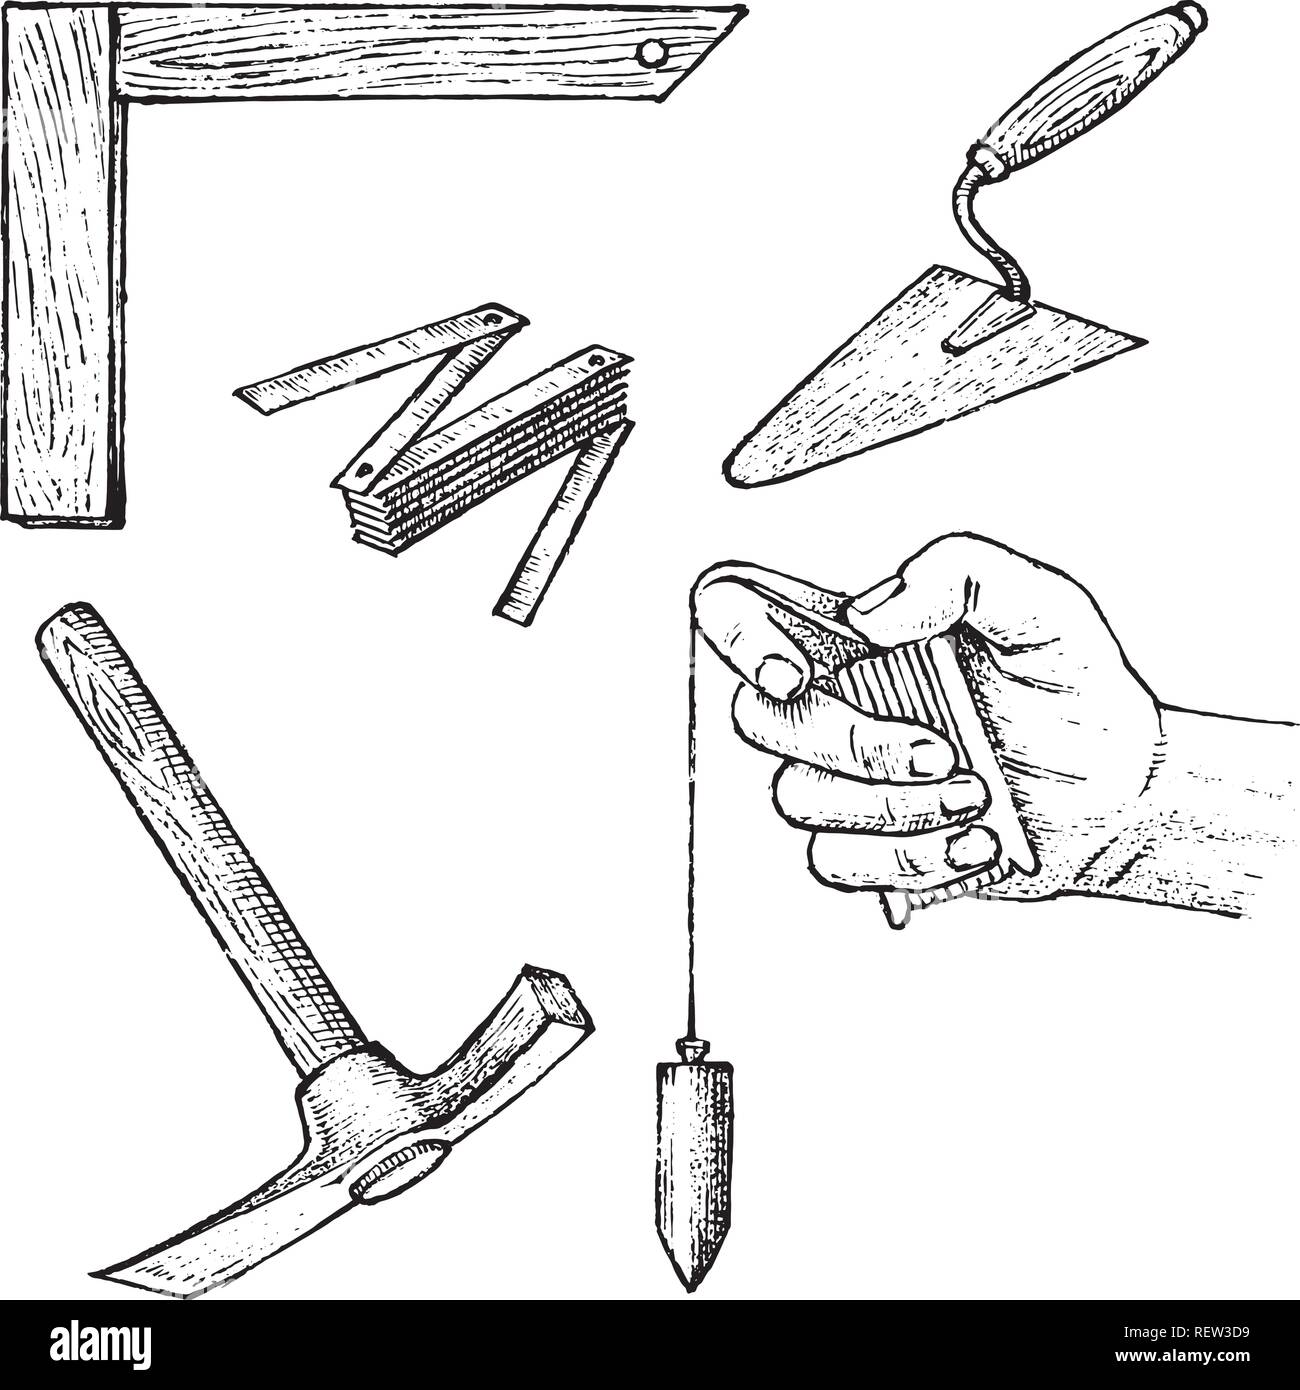 Werkzeuge für Bau und Reparatur von Gebäuden. Spachtel, Hammer, Messgeräte.  Hand graviert vintage Skizze gezeichnet Stock-Vektorgrafik - Alamy